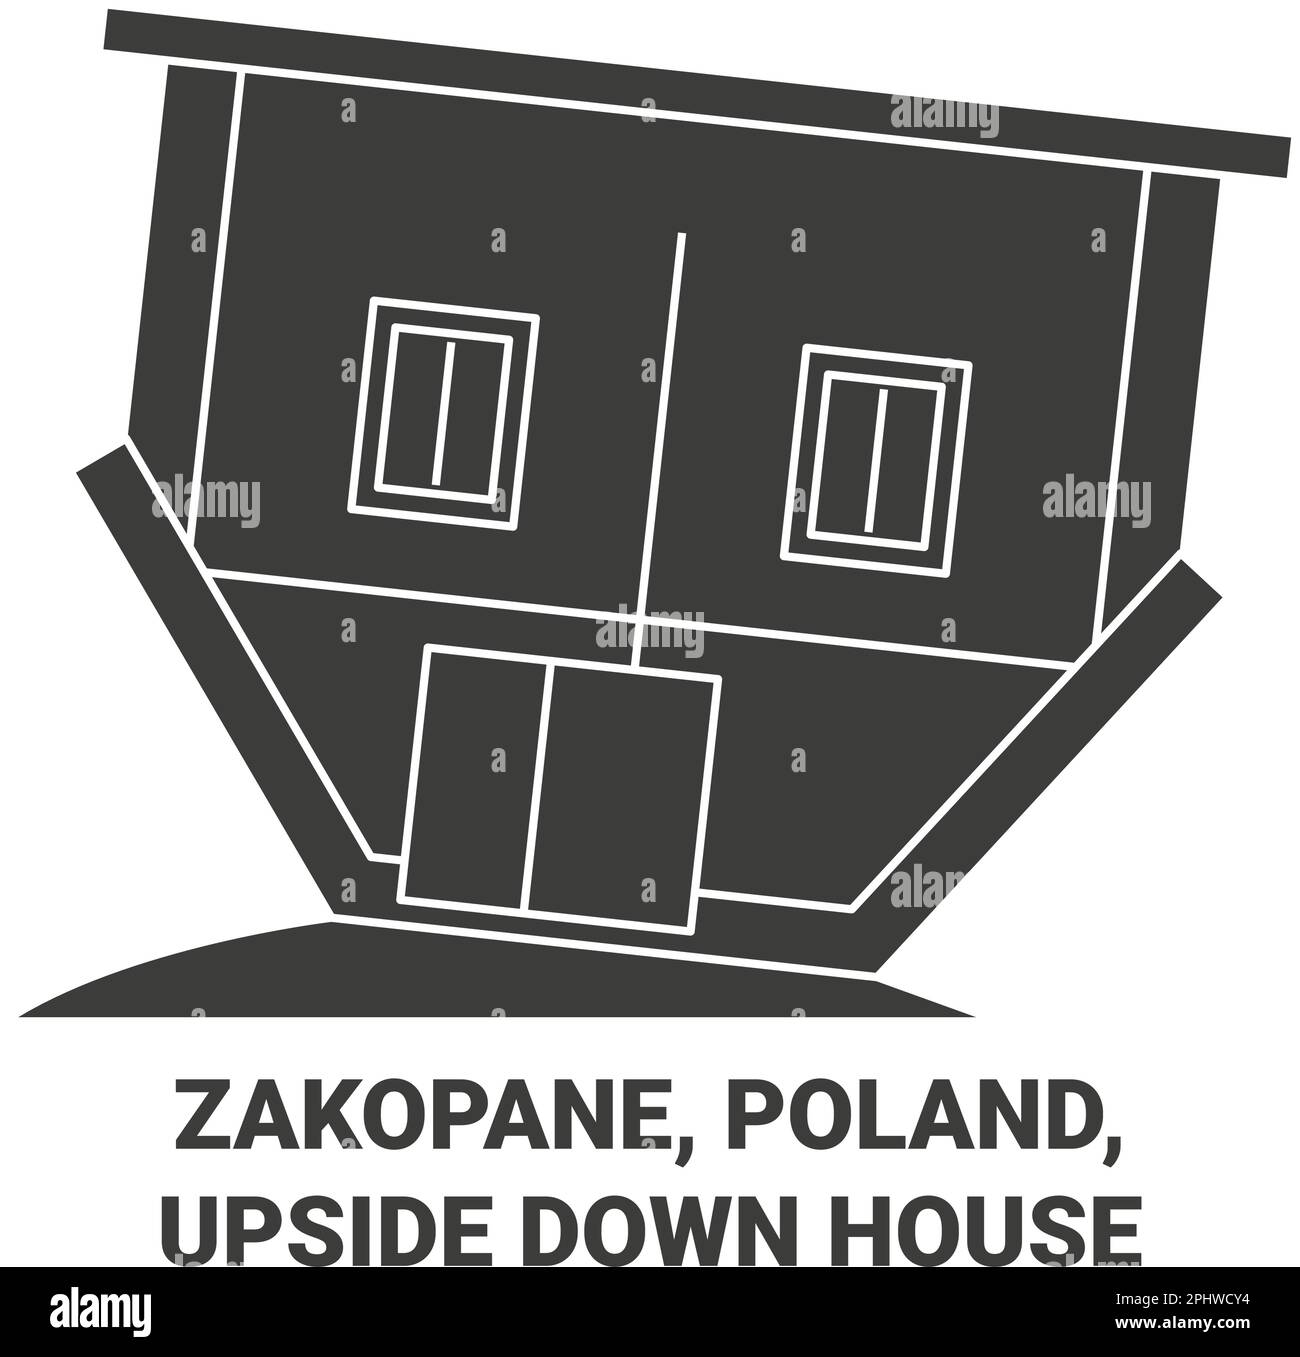 Poland, Zakopane, Upside Down House travel landmark vector illustration Stock Vector